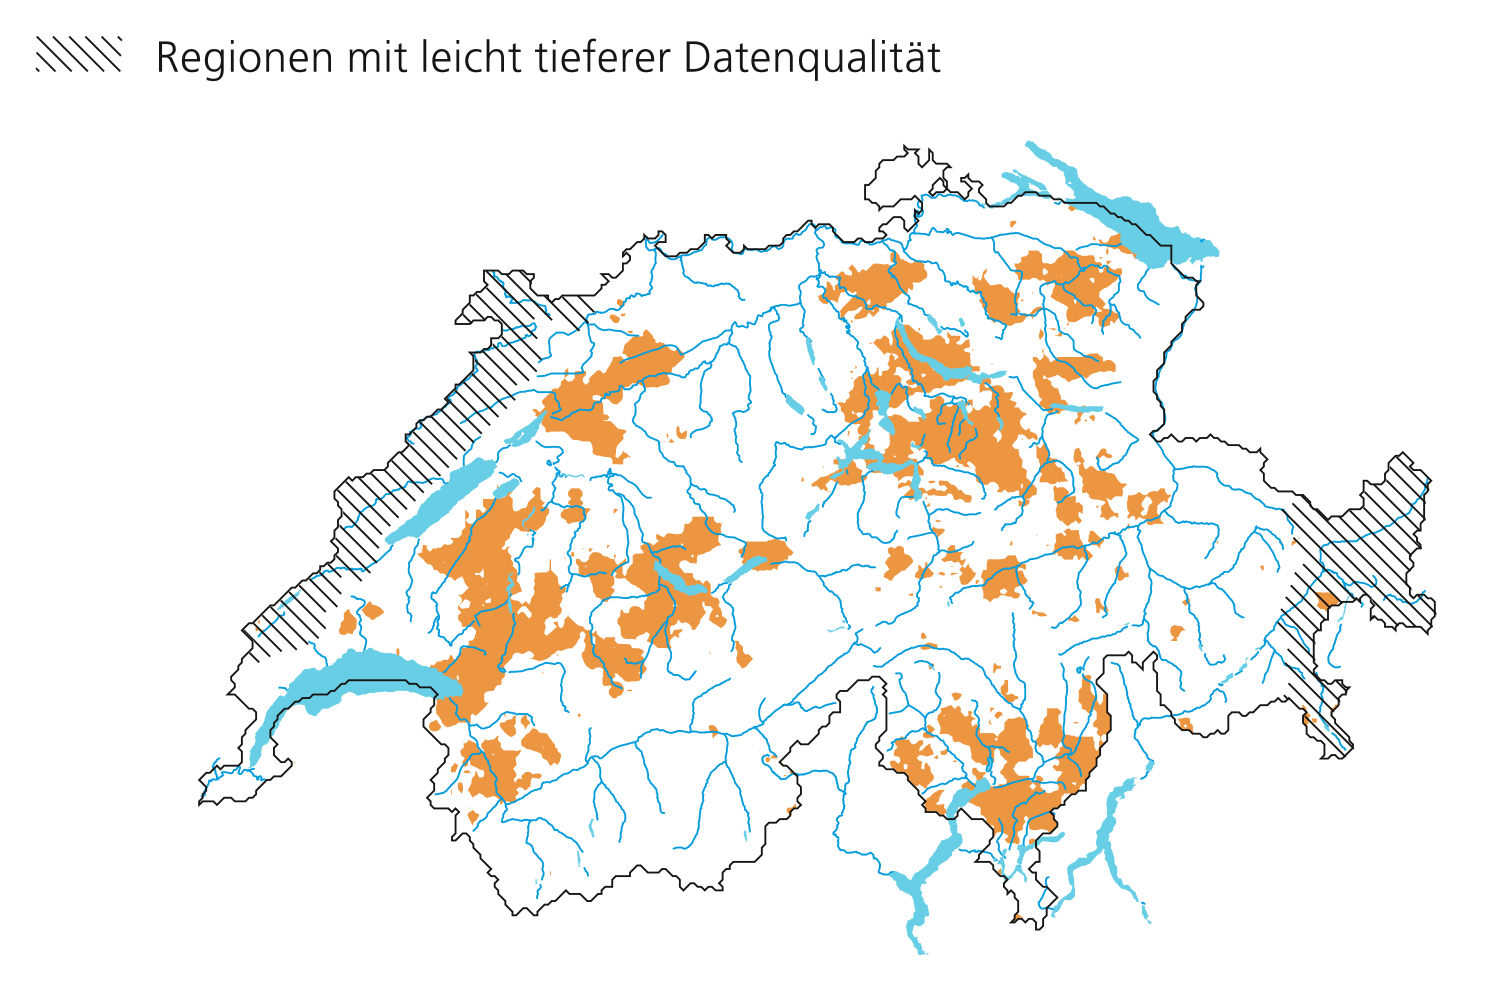 Hagelfläche am 1. Juli 2019. Regionen mit leicht tieferer Datenqualität entlang des Juras und im östlichen Graubünden. 